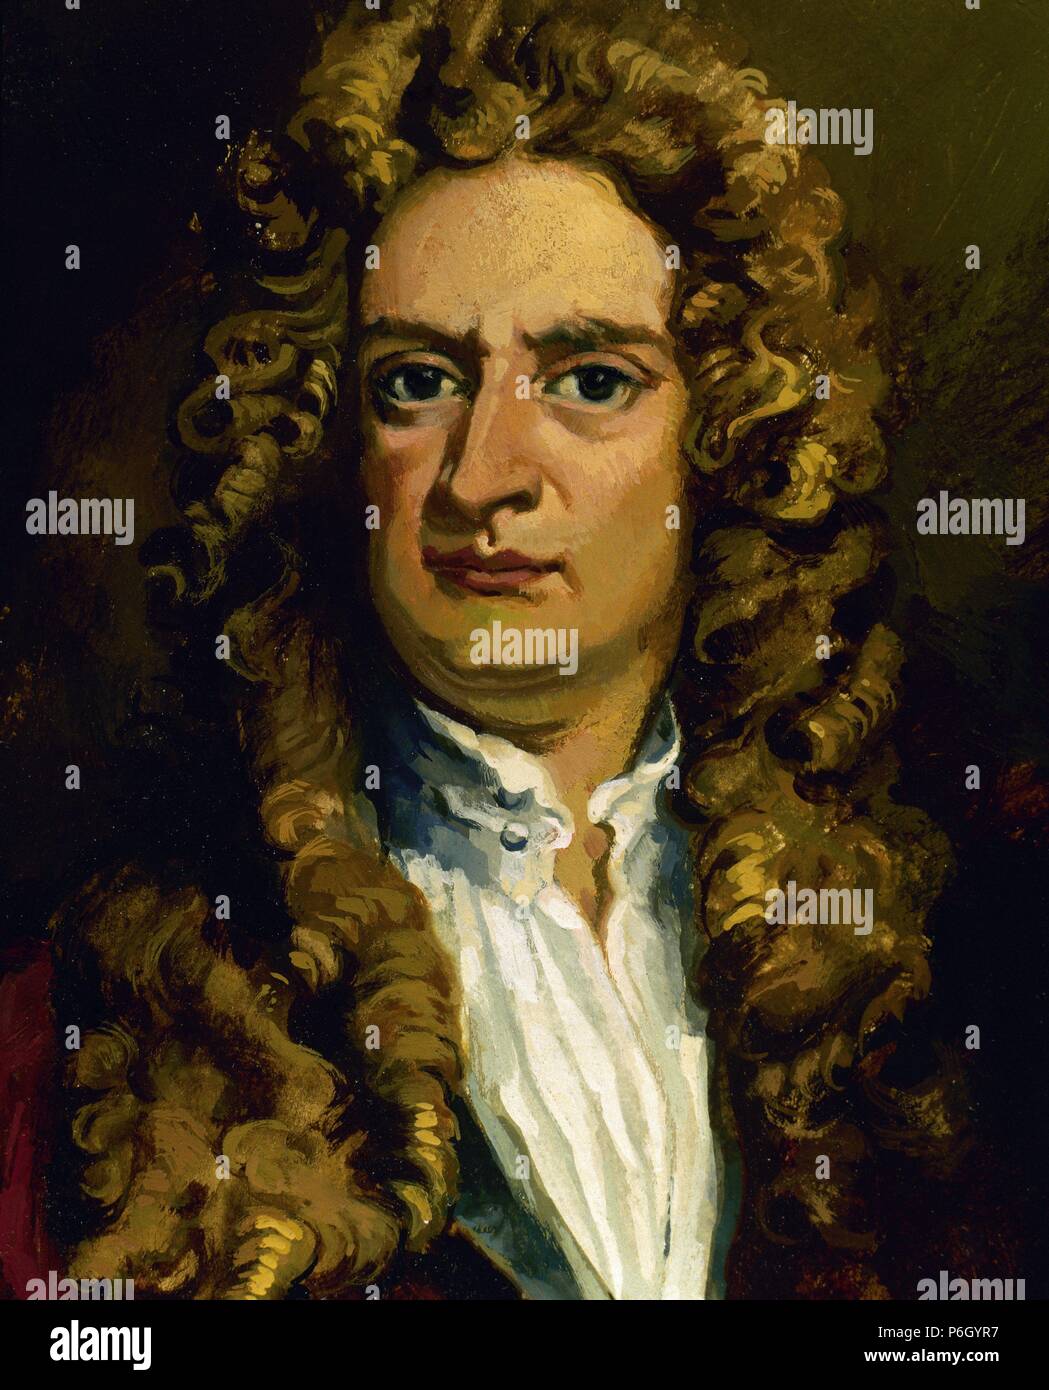 Isaac Newton (1642-1726). Englischer Physiker und Mathematiker. Porträt. Farbe. Stockfoto